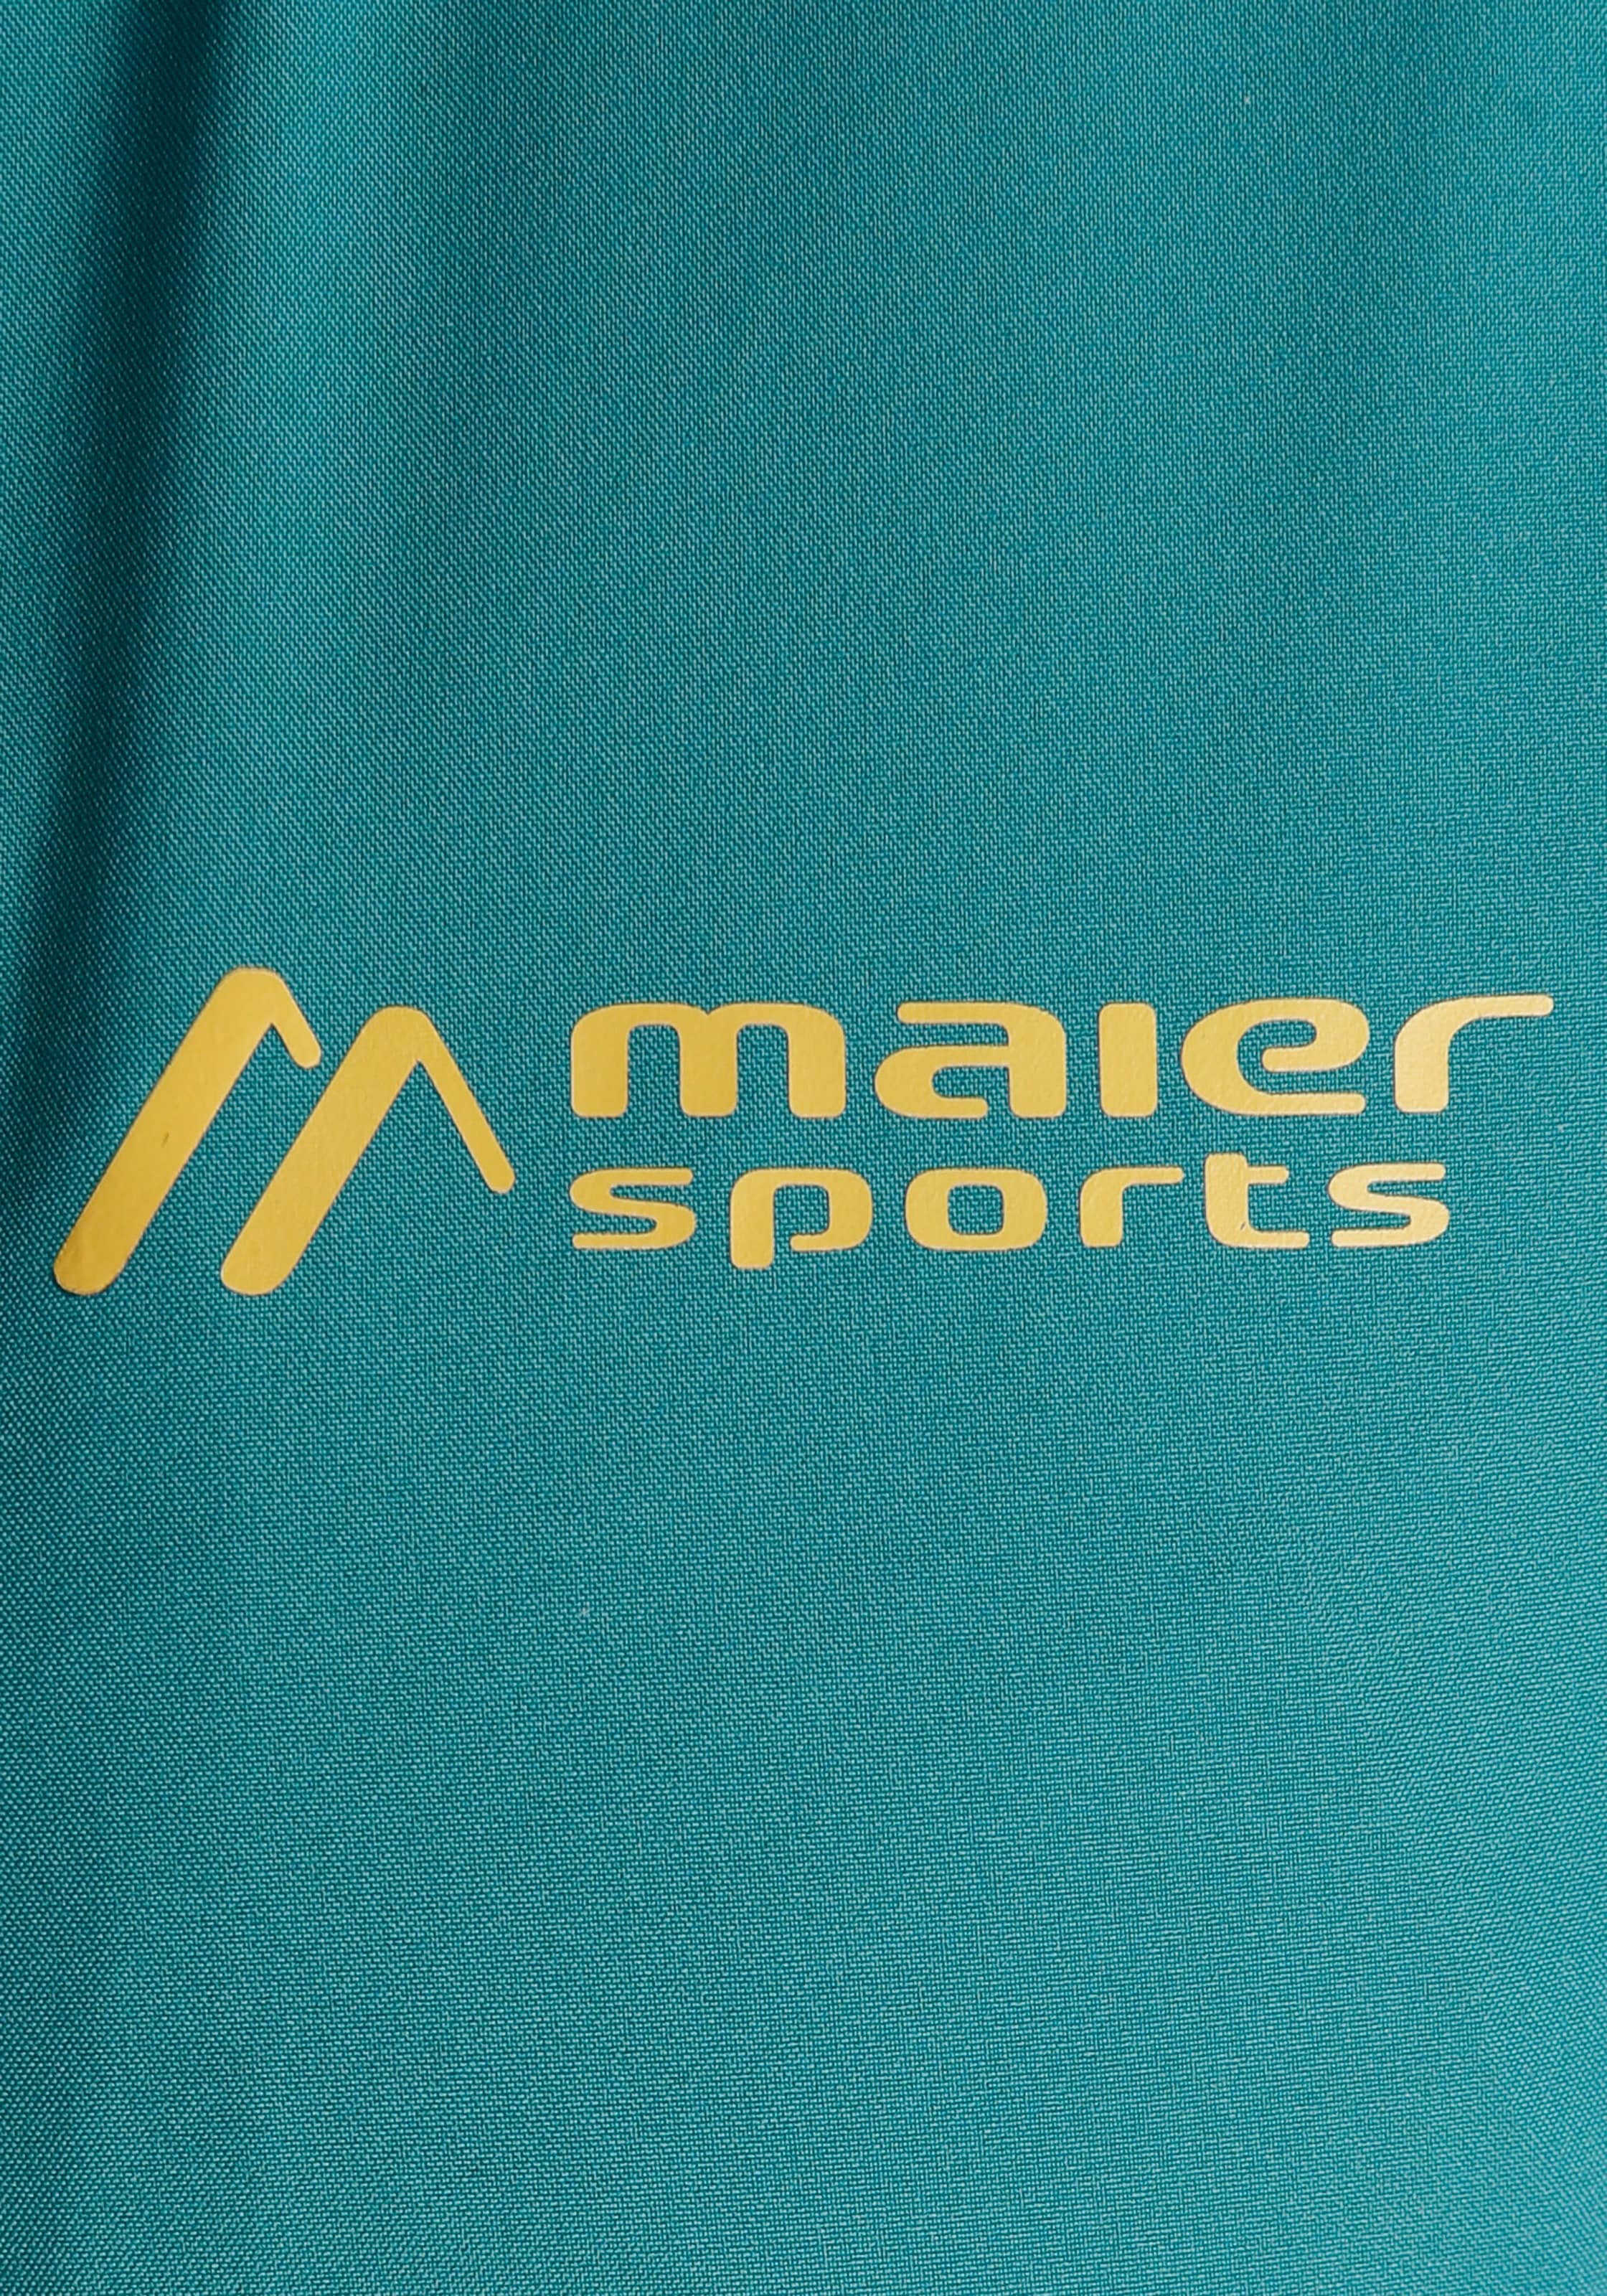 Maier Sports Outdoorjacke, mit Kapuze, Wasserdichte Übergangsjacke, auch in  großen Größen erhältlich online bei OTTO